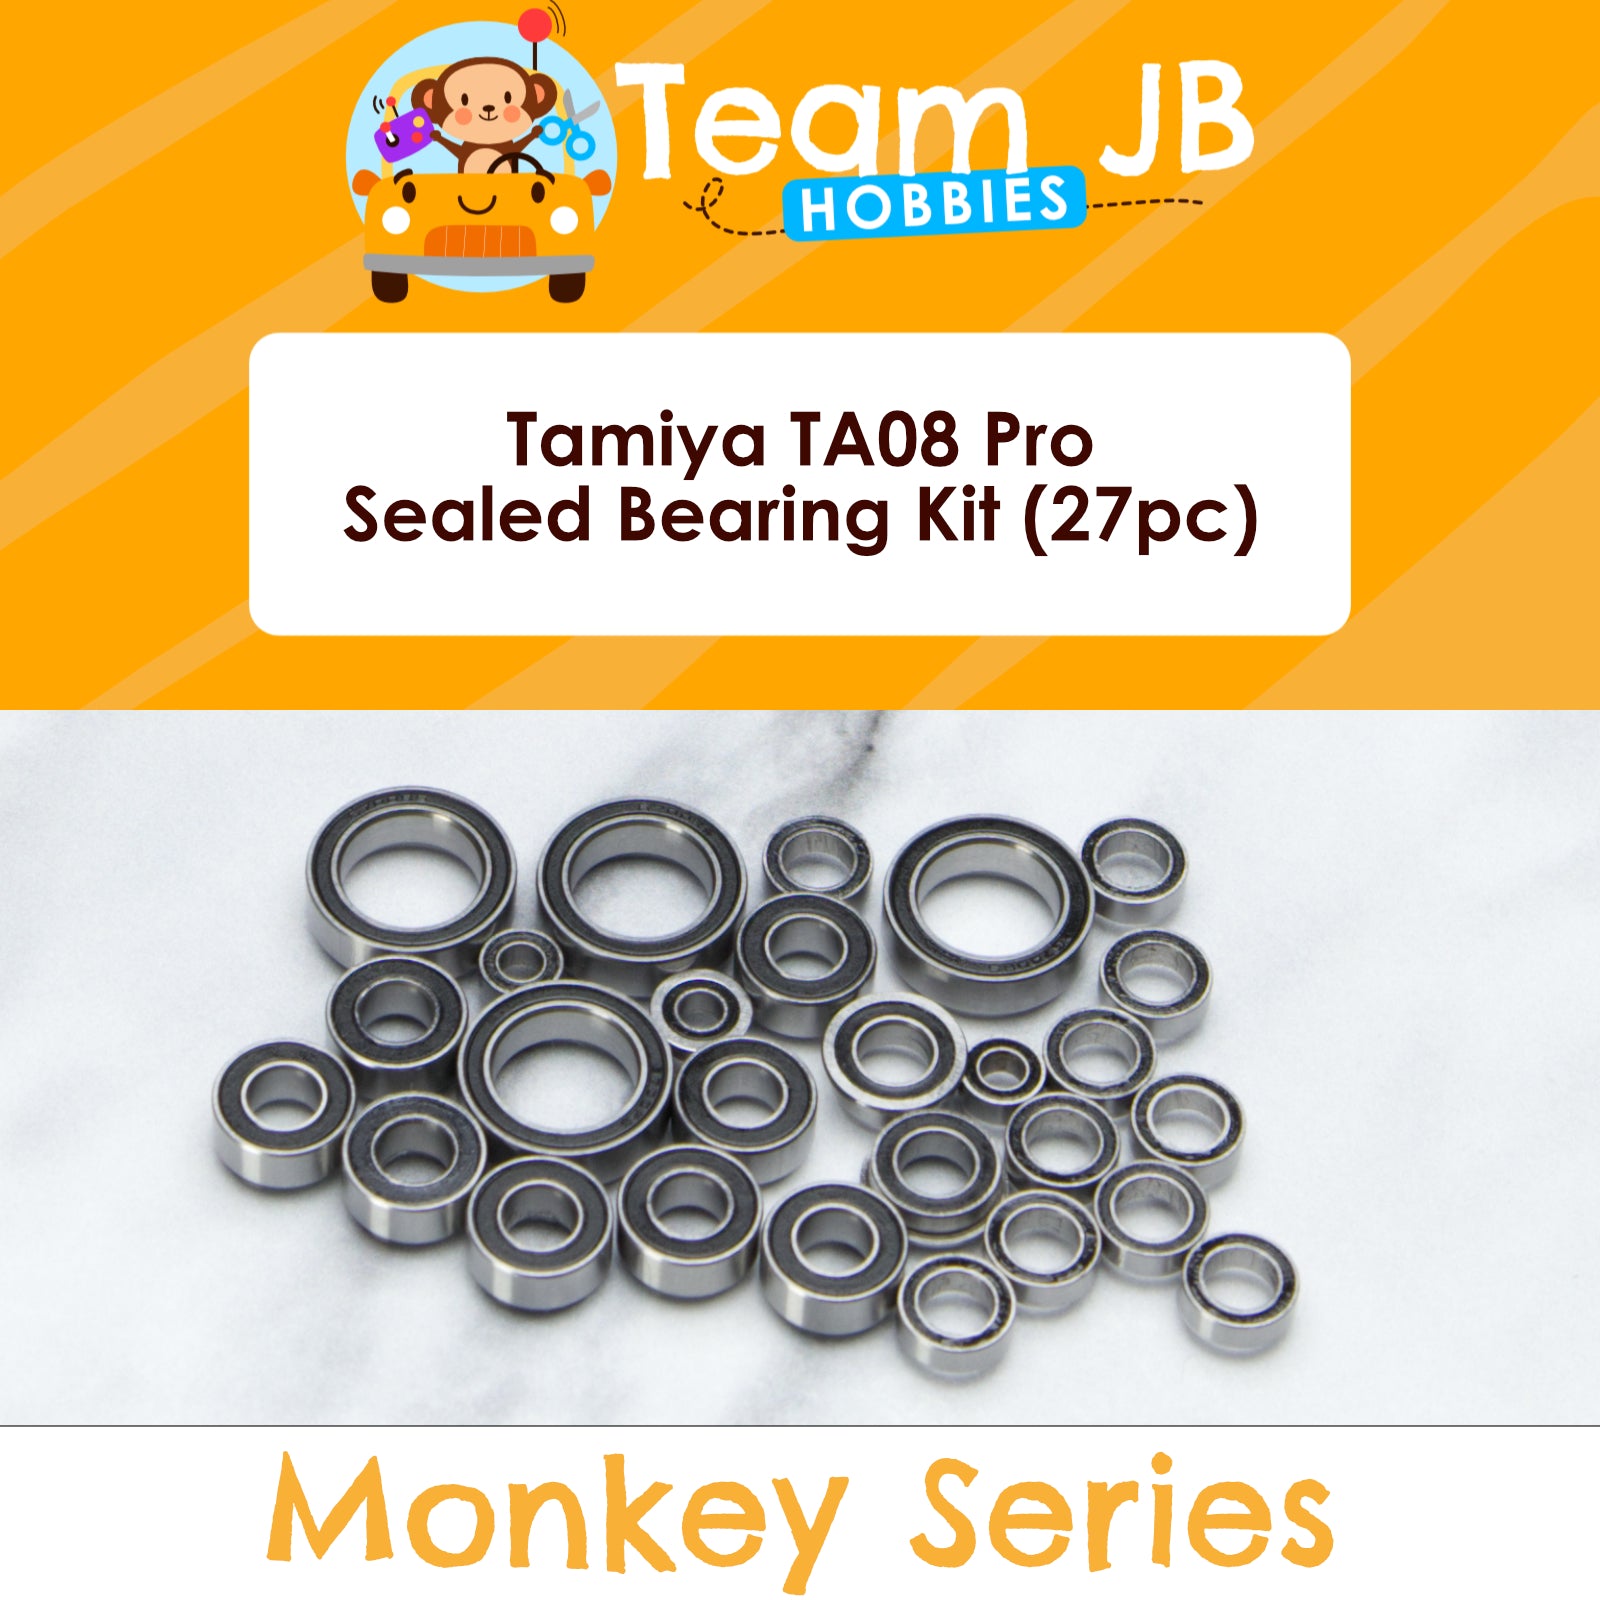 Tamiya TA08 Pro - Sealed Bearing Kit